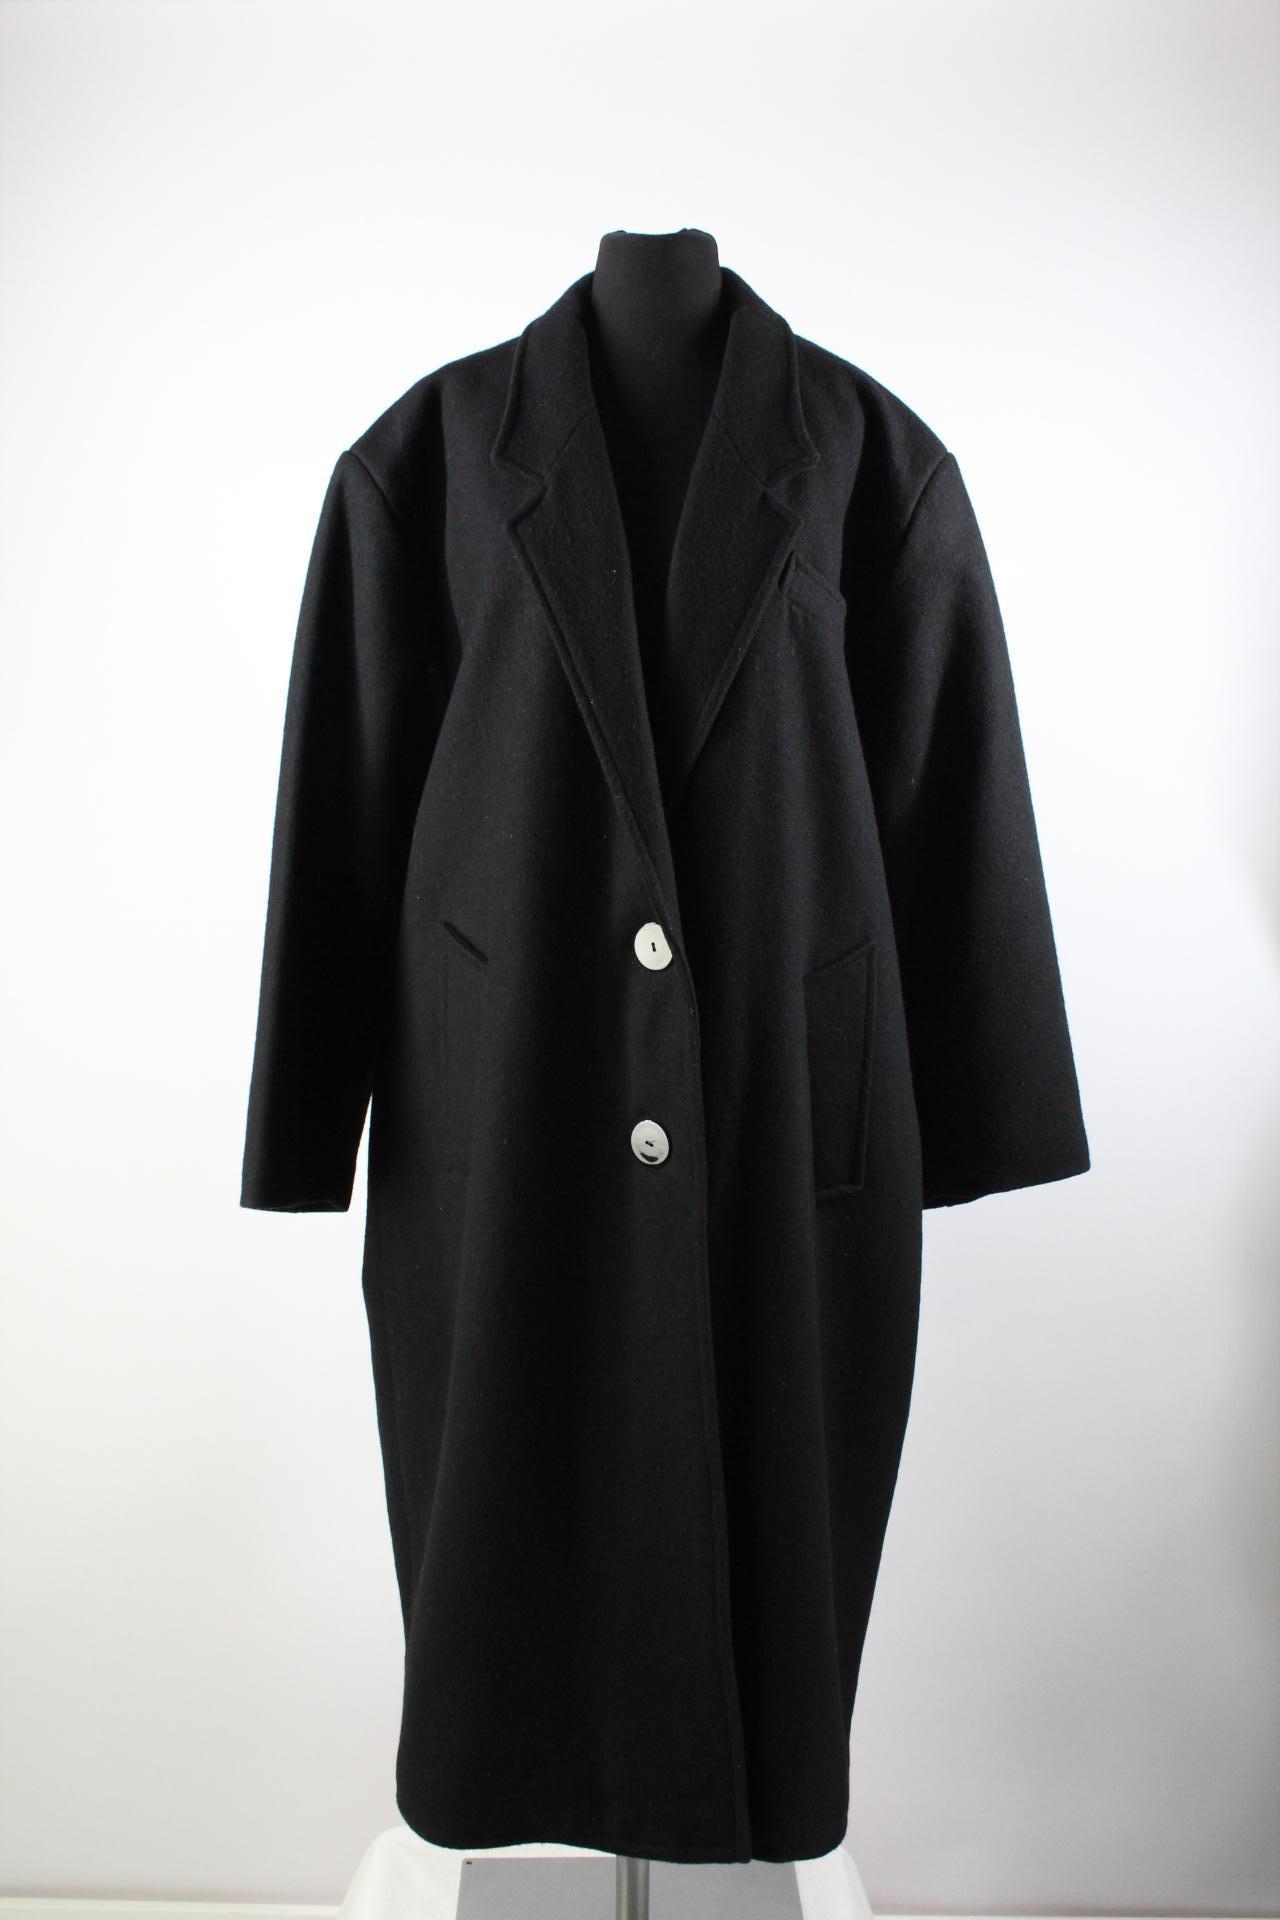 C&A Damen-Mantel schwarz Größe 21